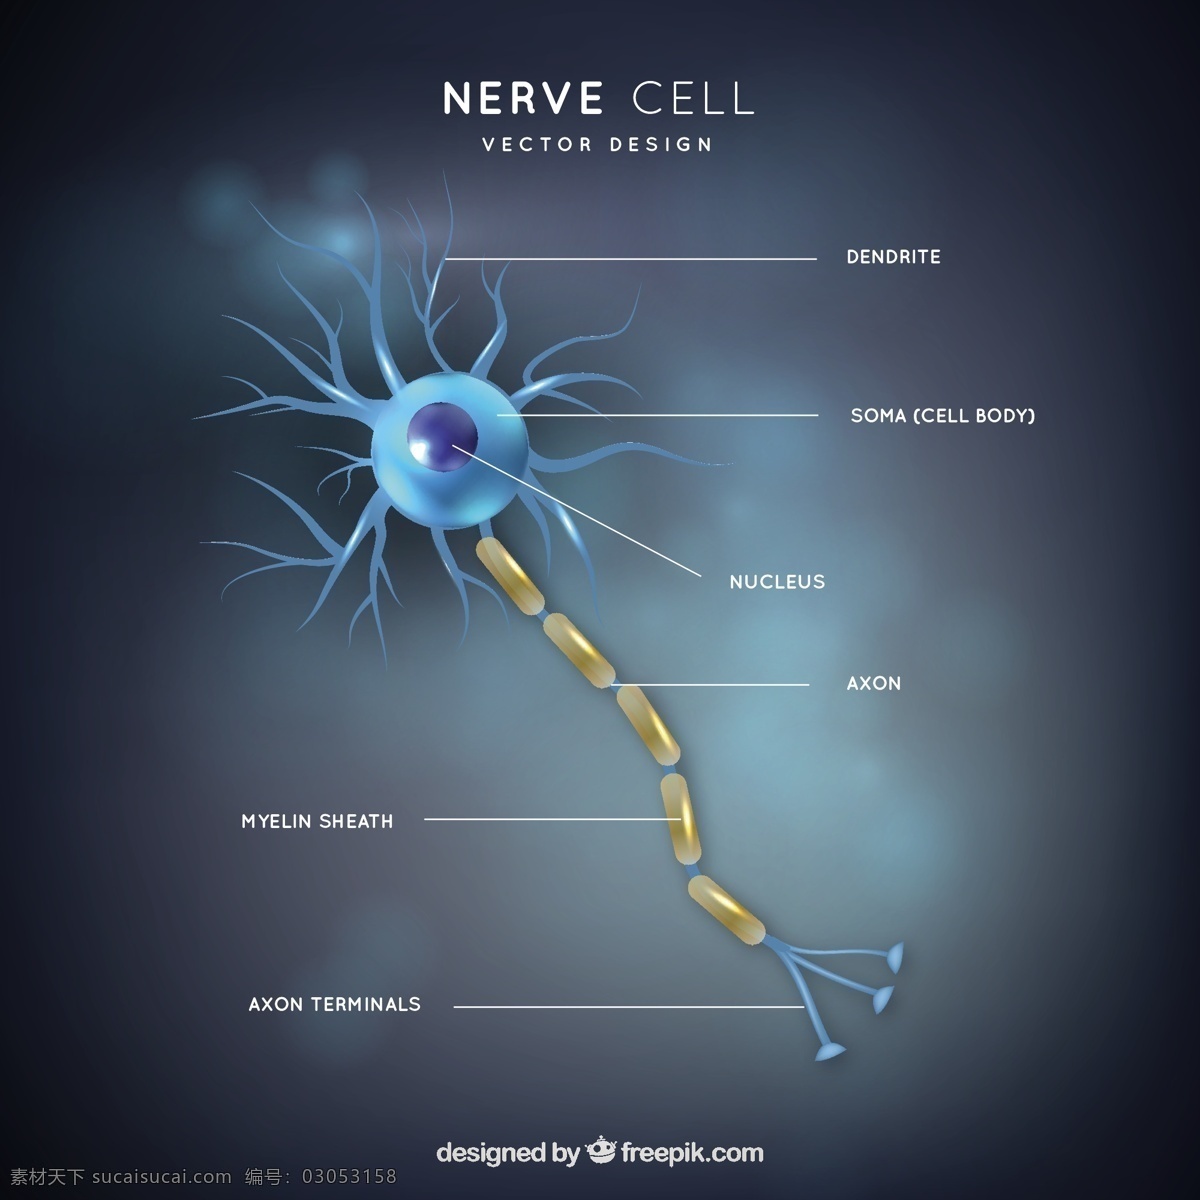 神经元插图 医学 科学 人类 化学 插图 生物学 分子 显微镜 电池 配件 神经元 微生物学 生理学 神经